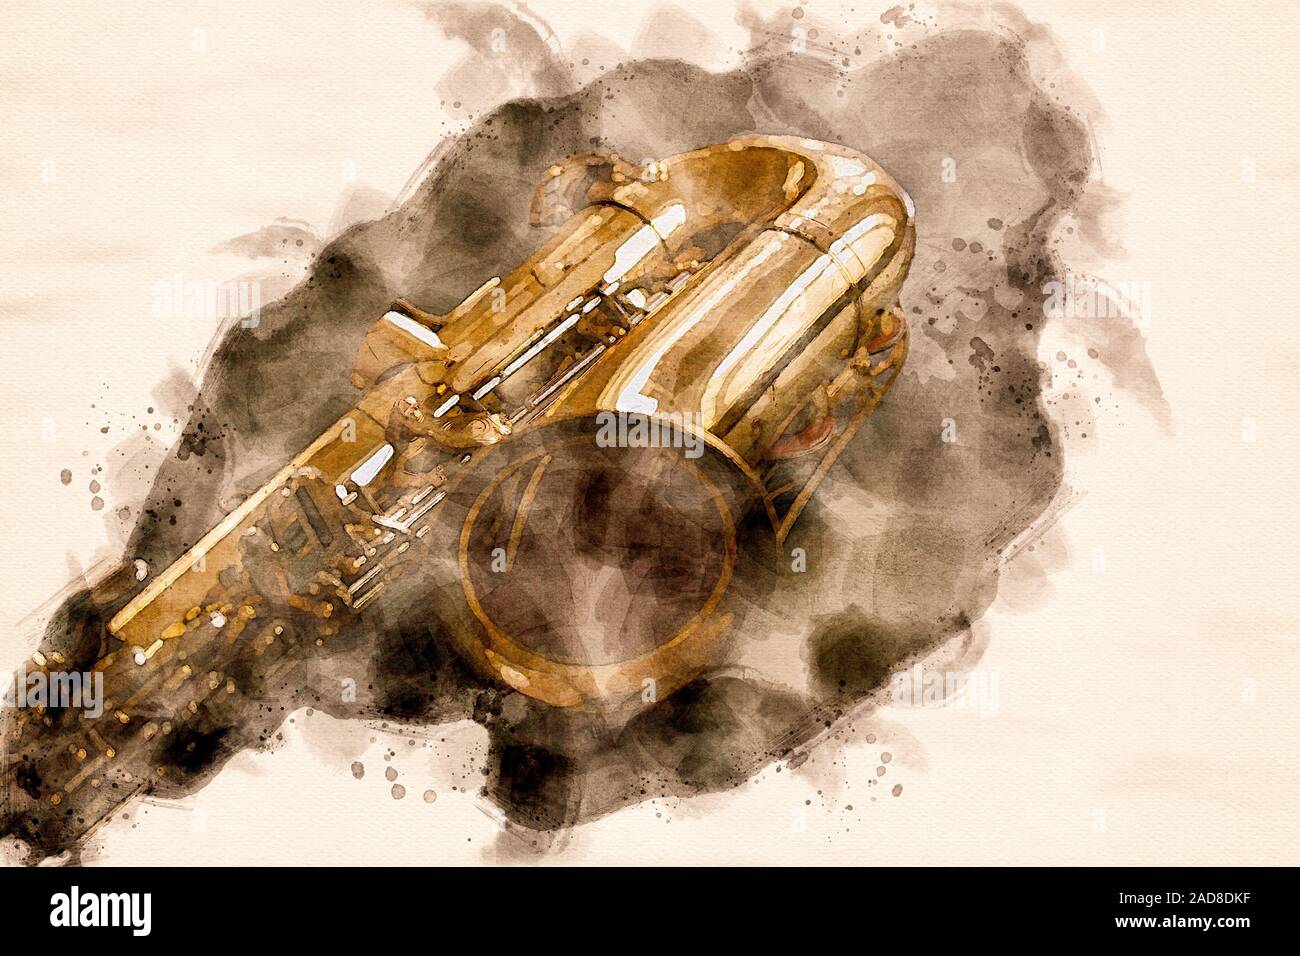 L'aquarelle d'un saxophone vintage d'or couché sur une table. Image générée par ordinateur. Banque D'Images